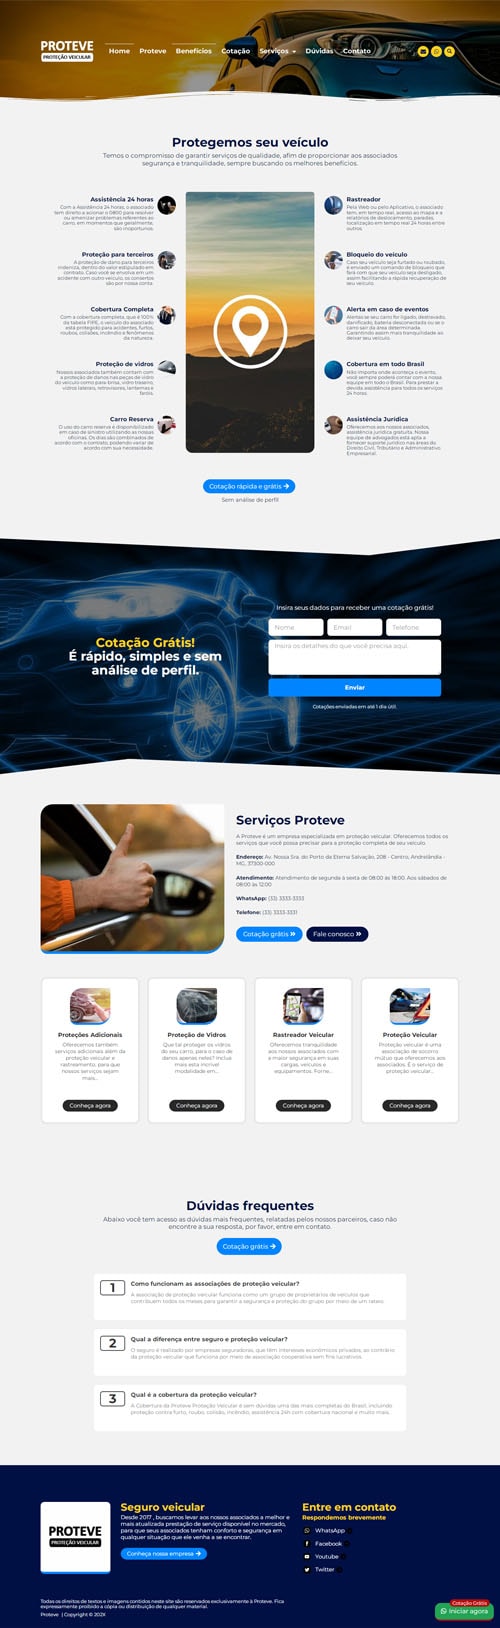 Página inicial completa Proteve - Site para empresas de seguro e cooperativas de proteção veicular